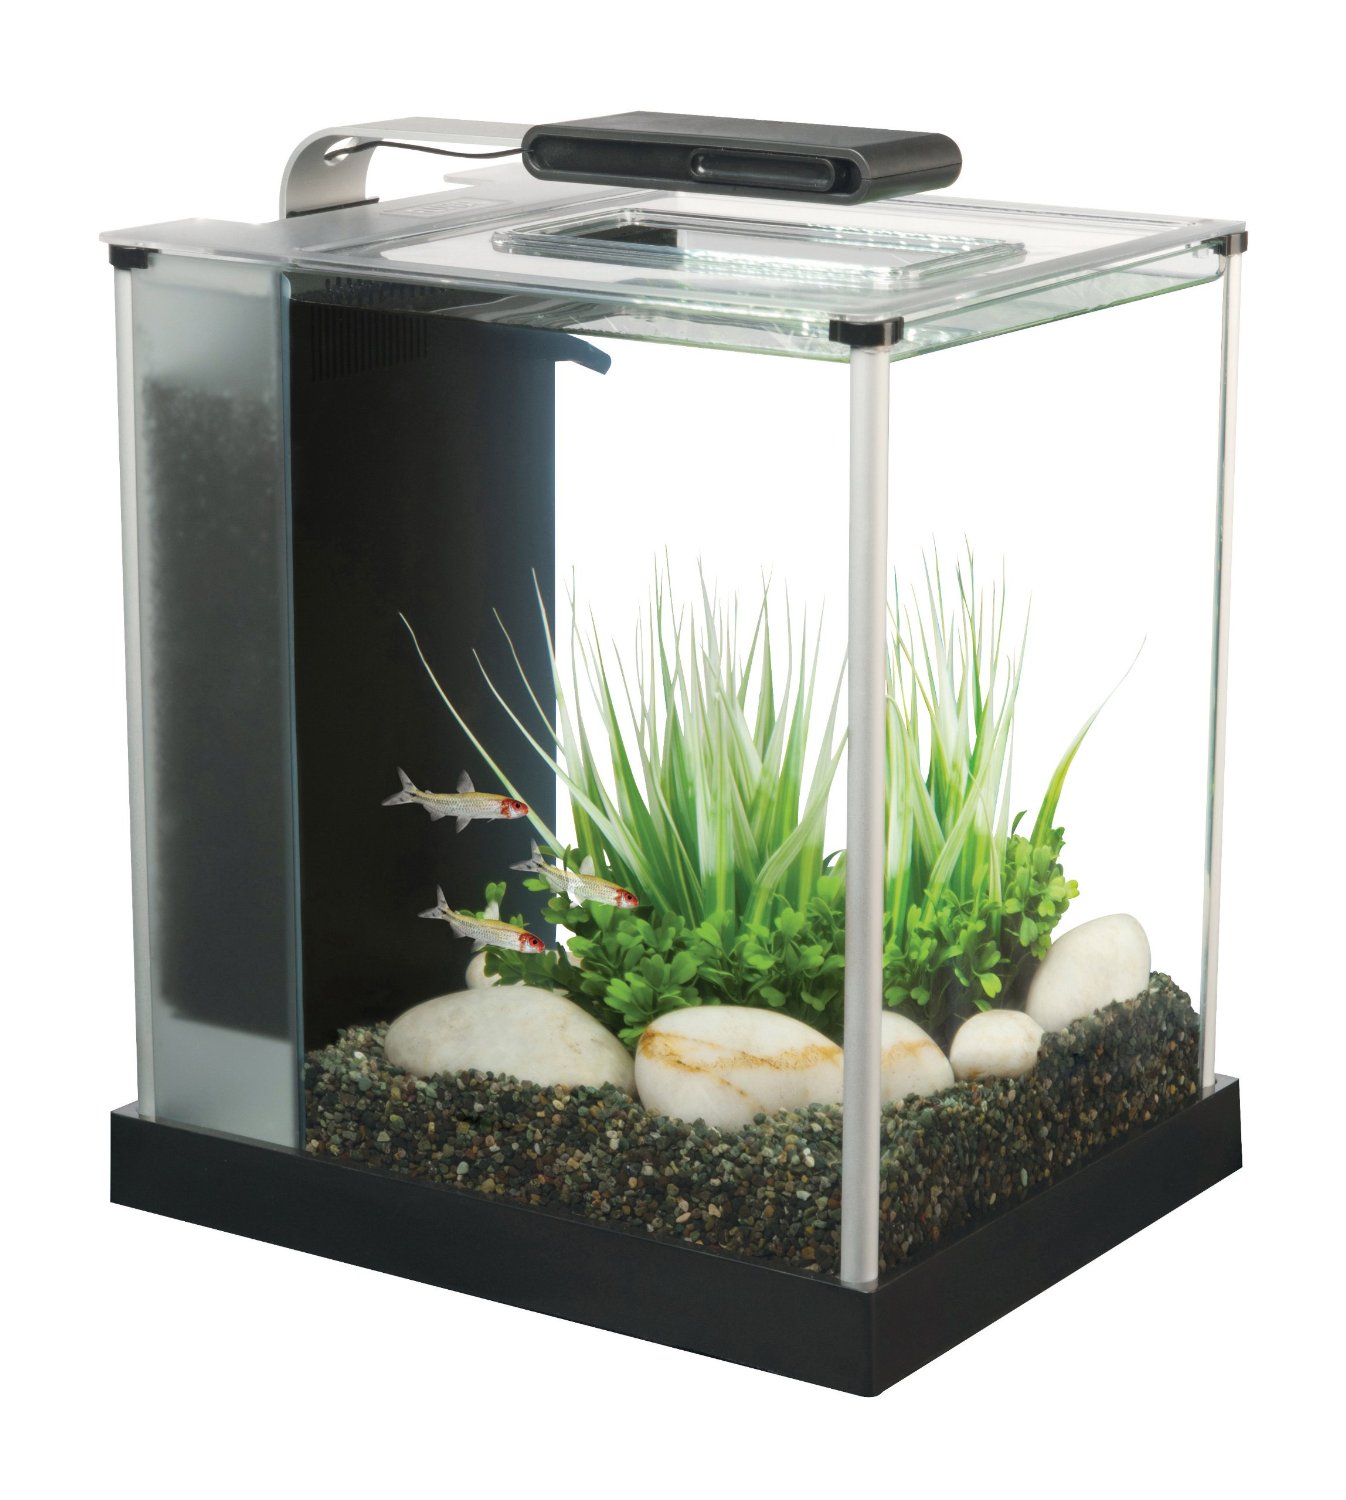 Fluval Spec 3 - 10 liter akvarium, til dig der vil have et par fisk skrivebordet.